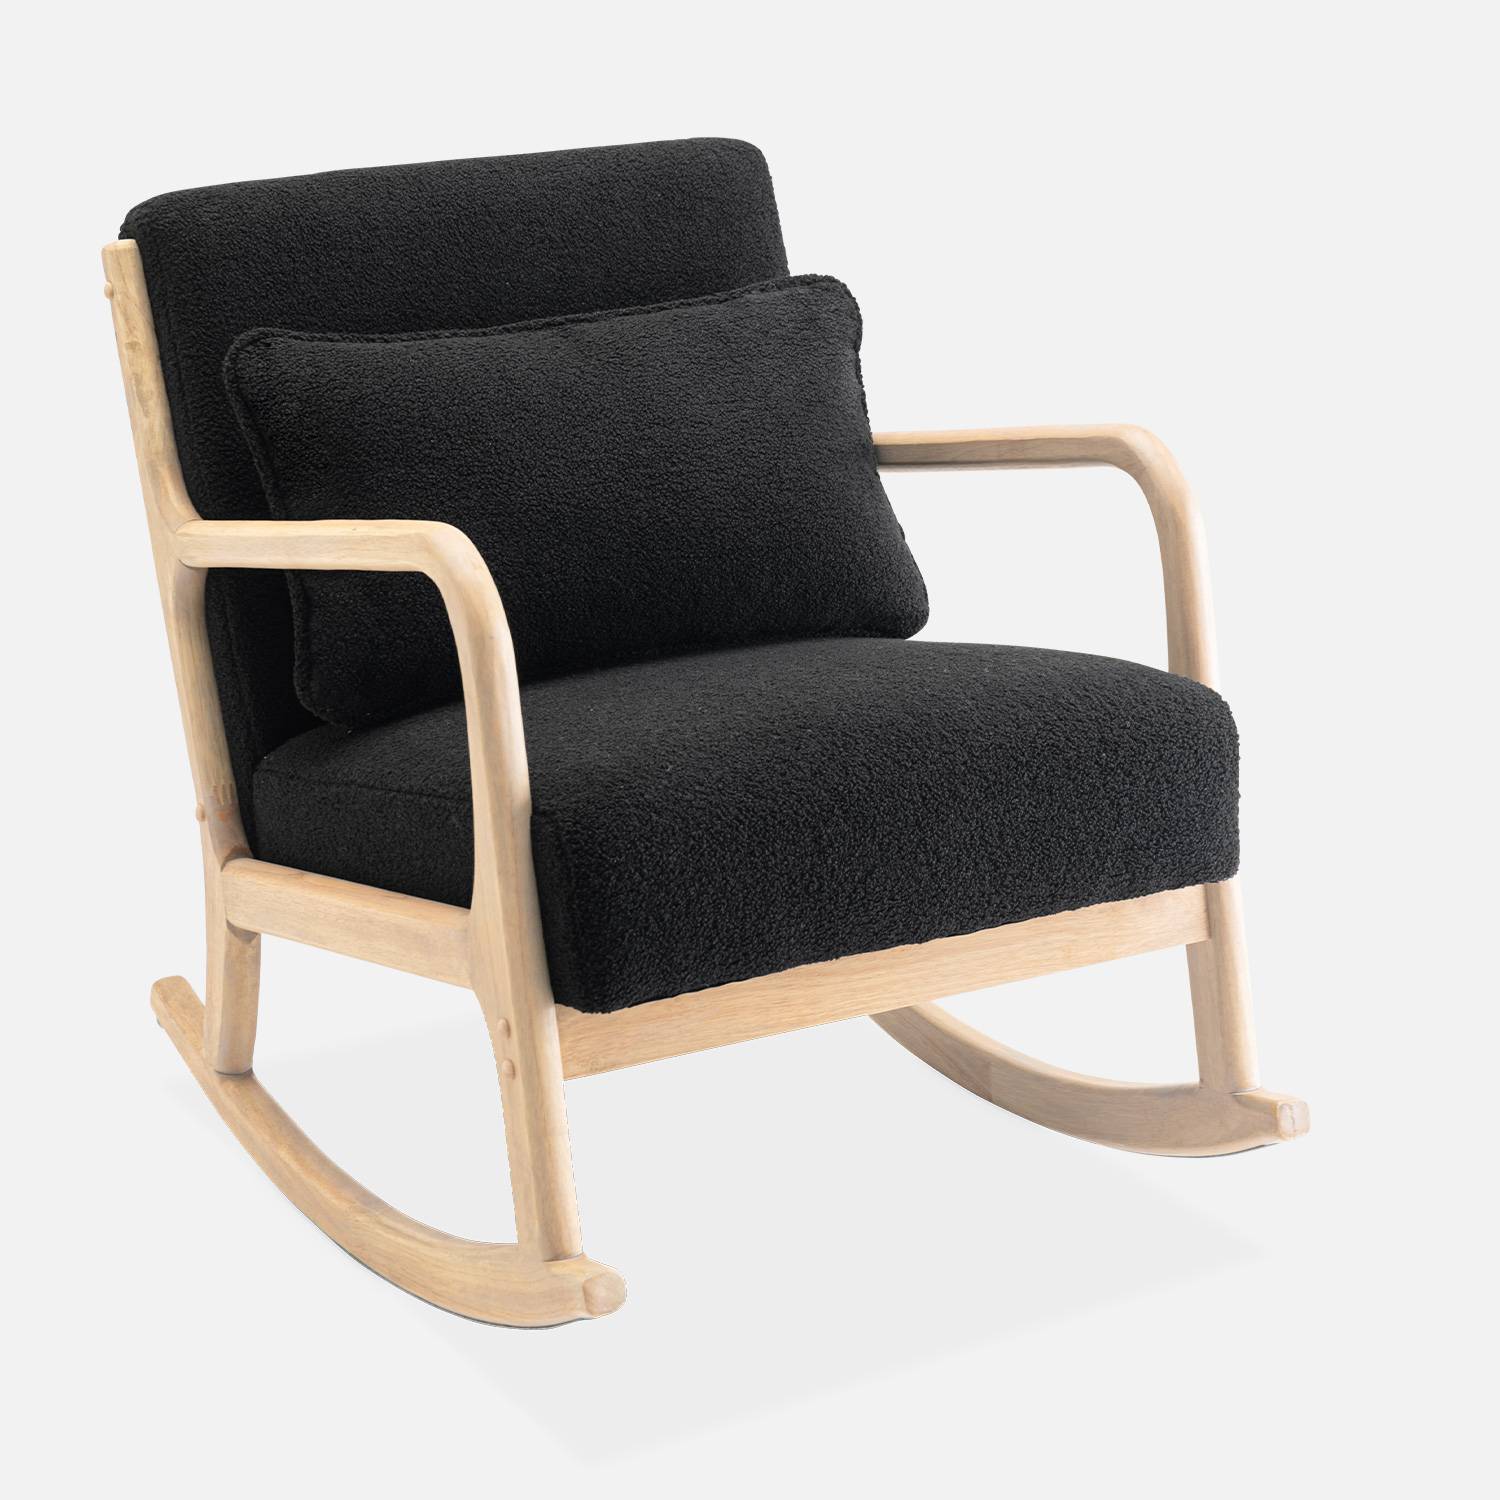 Design schommelstoel van hout en bouclé stof, 1 plaats, Scandinavische look Photo3